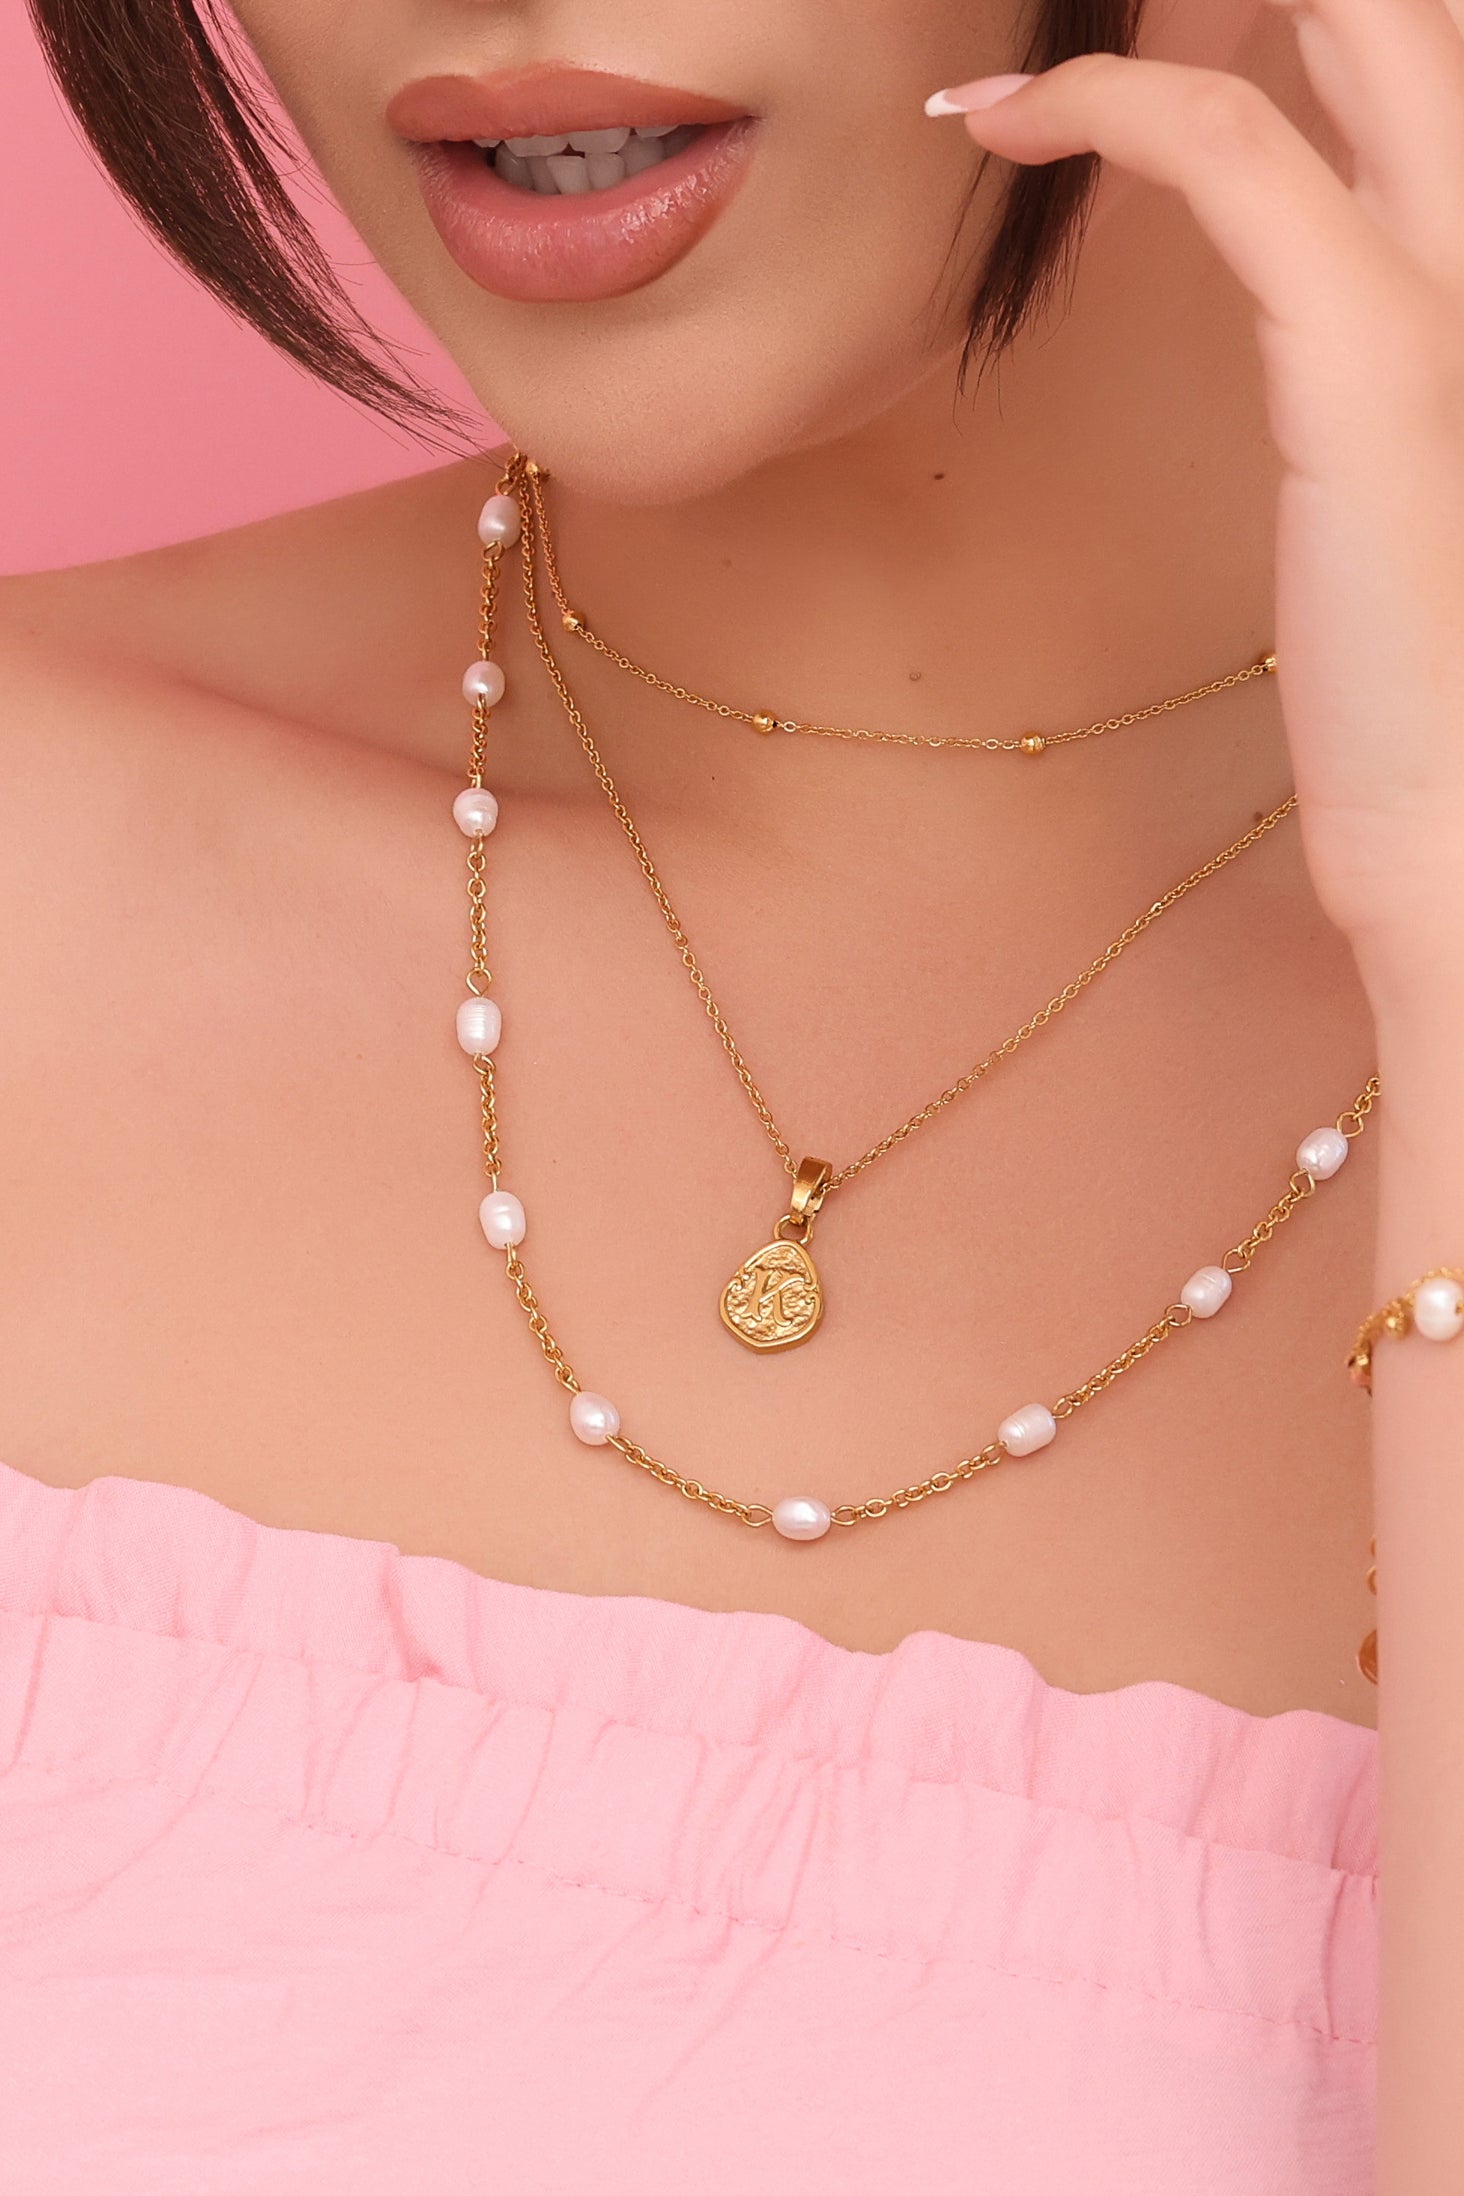 &quot;E&quot; Tberfil Letter Pendant with Petite Adjustable Chain Necklace